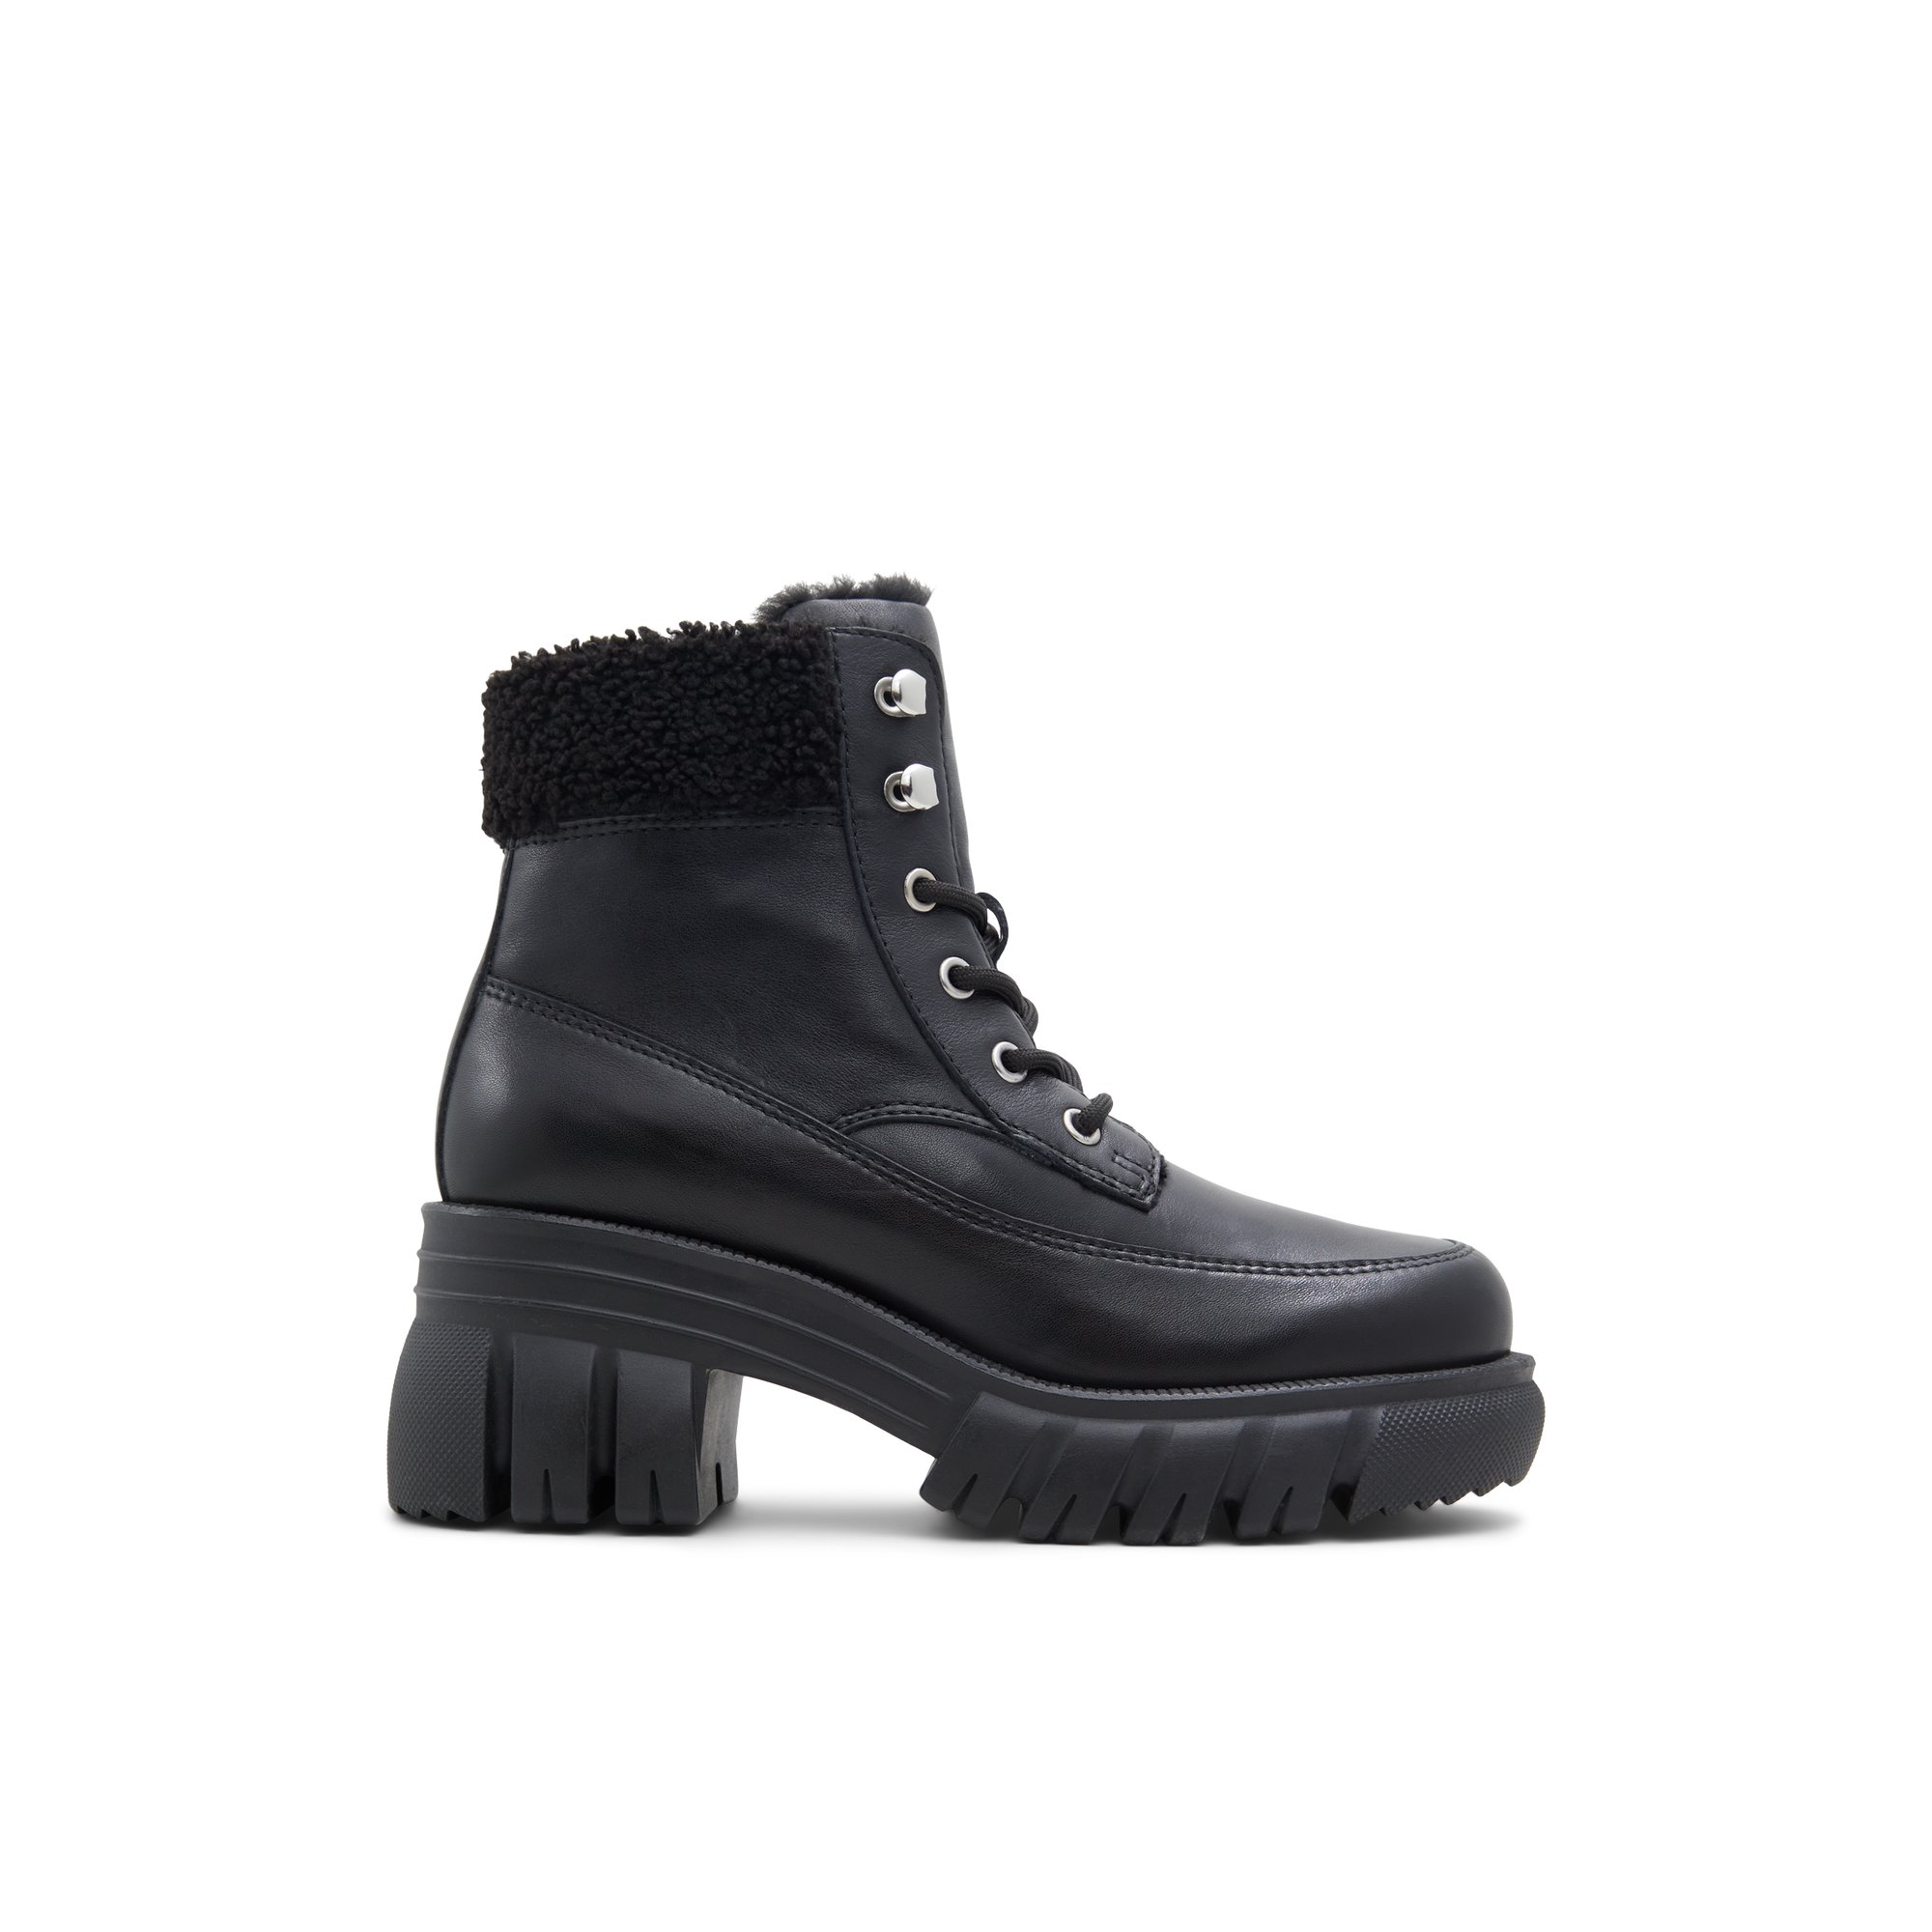 ALDO Marni - Women's Boots Winter - Black